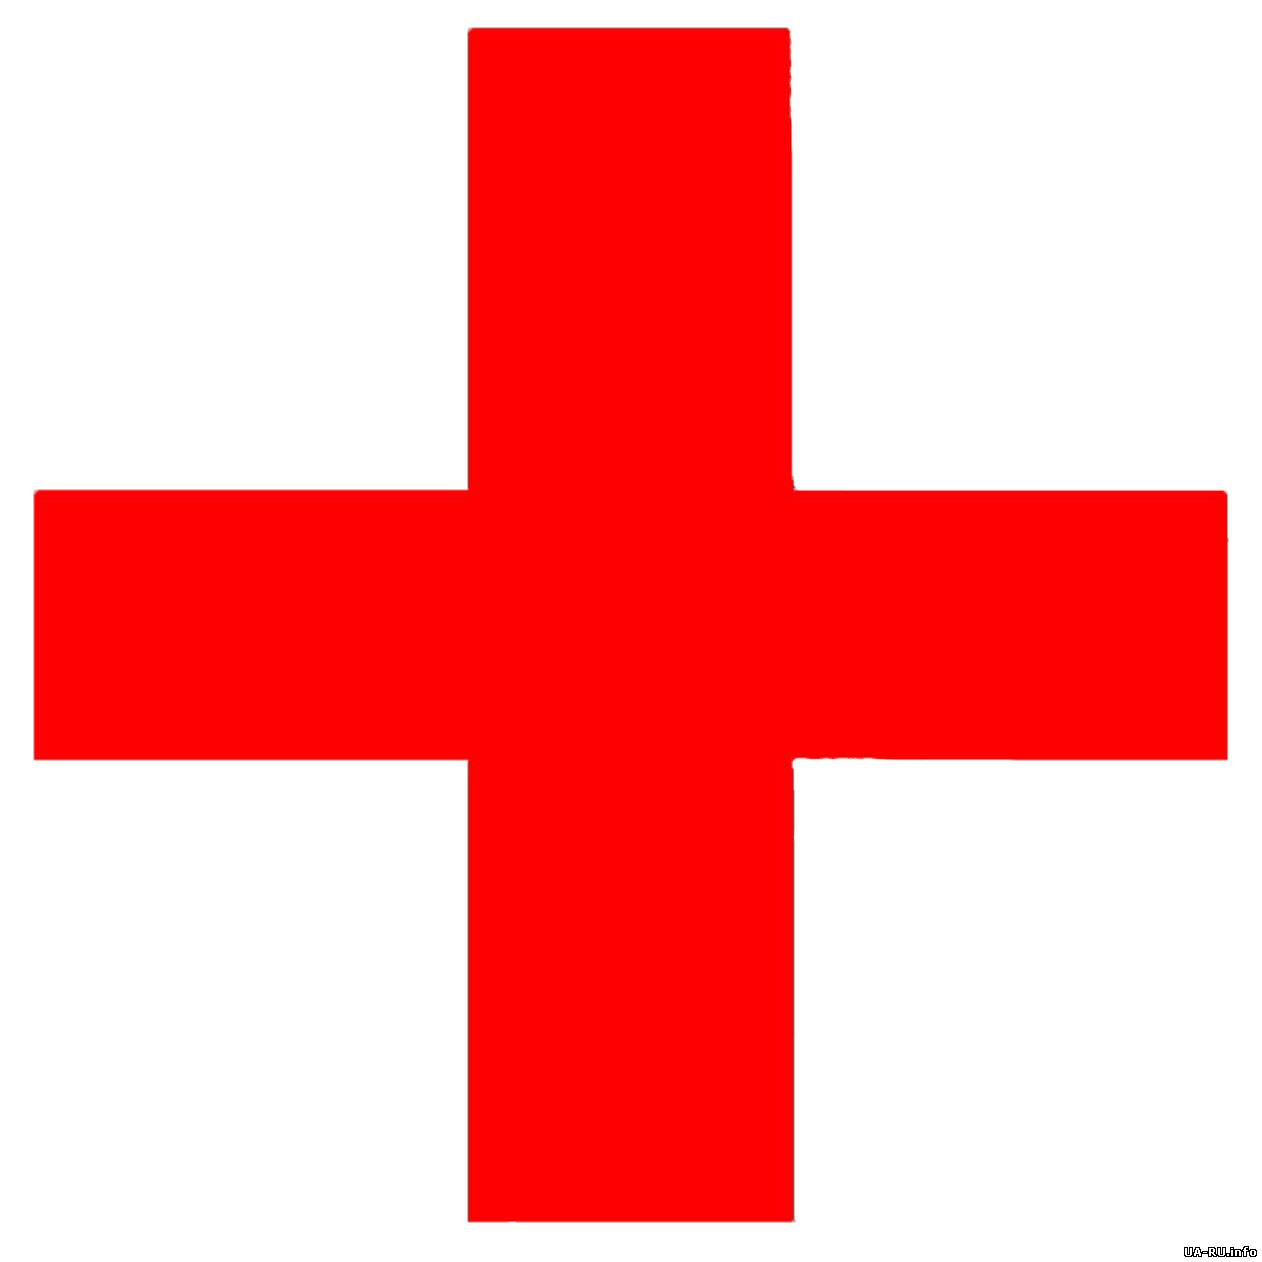 Около 50 сотрудников "Красного креста" работает в центре столицы